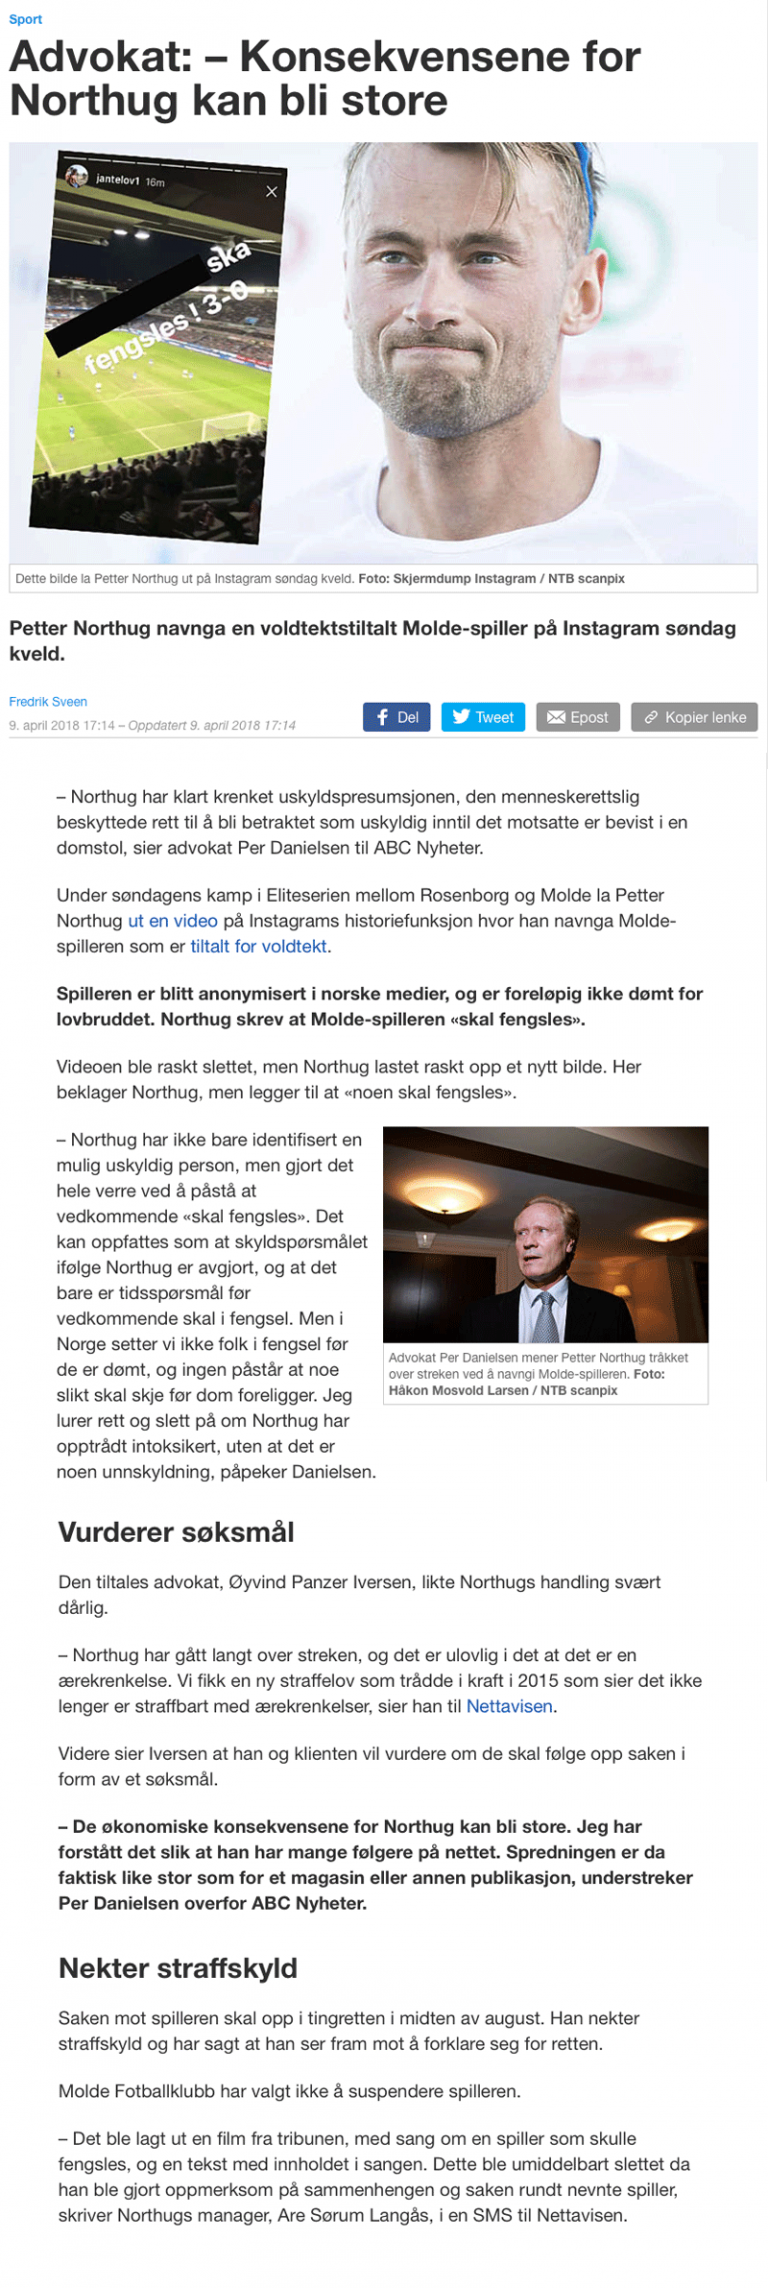 Ærekrenkelse Konsekvensene for Northug kan bli store. Advokat Danielsen & Co. Per Danielsen. Advokat i Oslo.